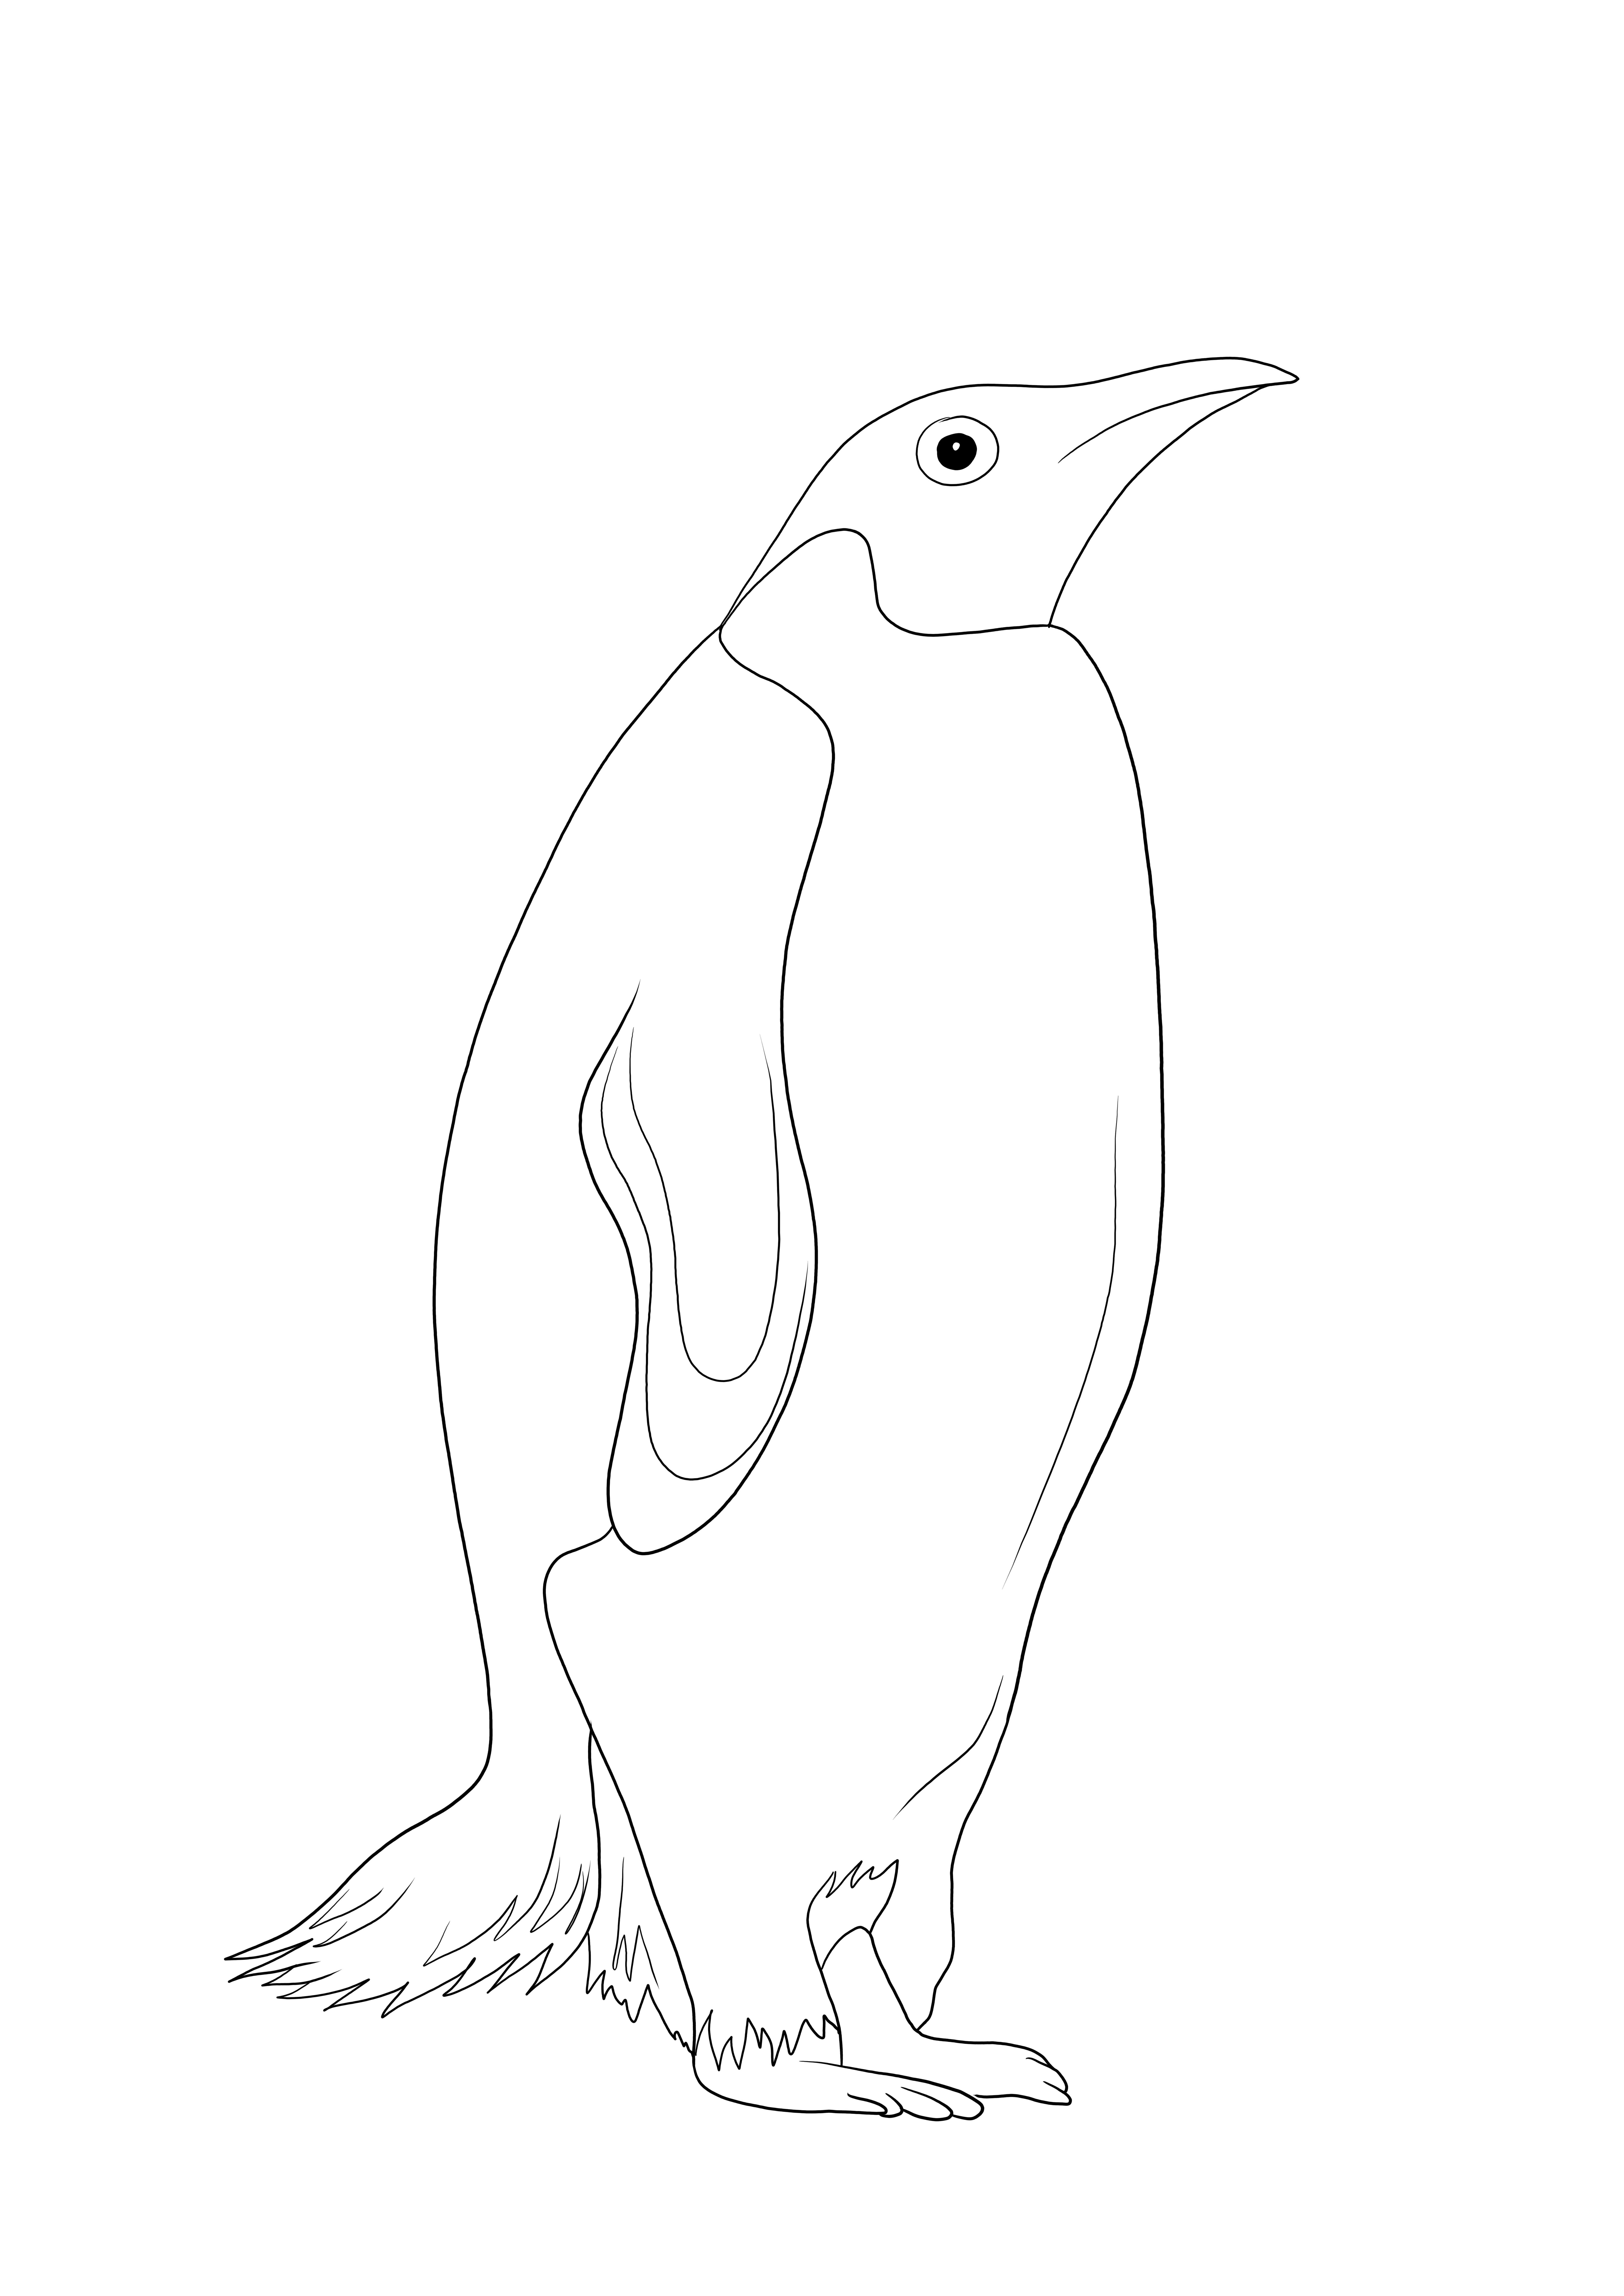 De slimme en gratis kleurplaat van een pinguïn - een geweldig hulpmiddel om meer te weten te komen over zeedieren kleurplaat